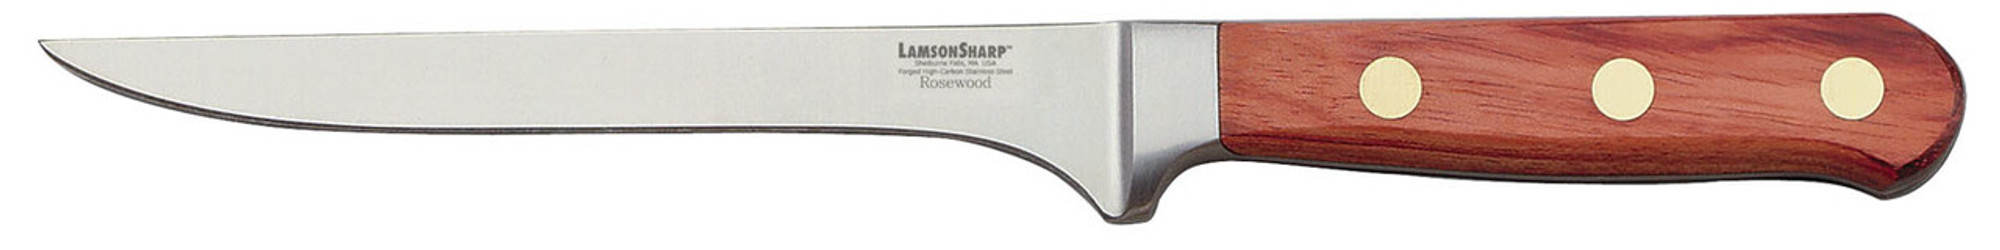 Lamson Rosewood Forged 6" Boning / Fillet